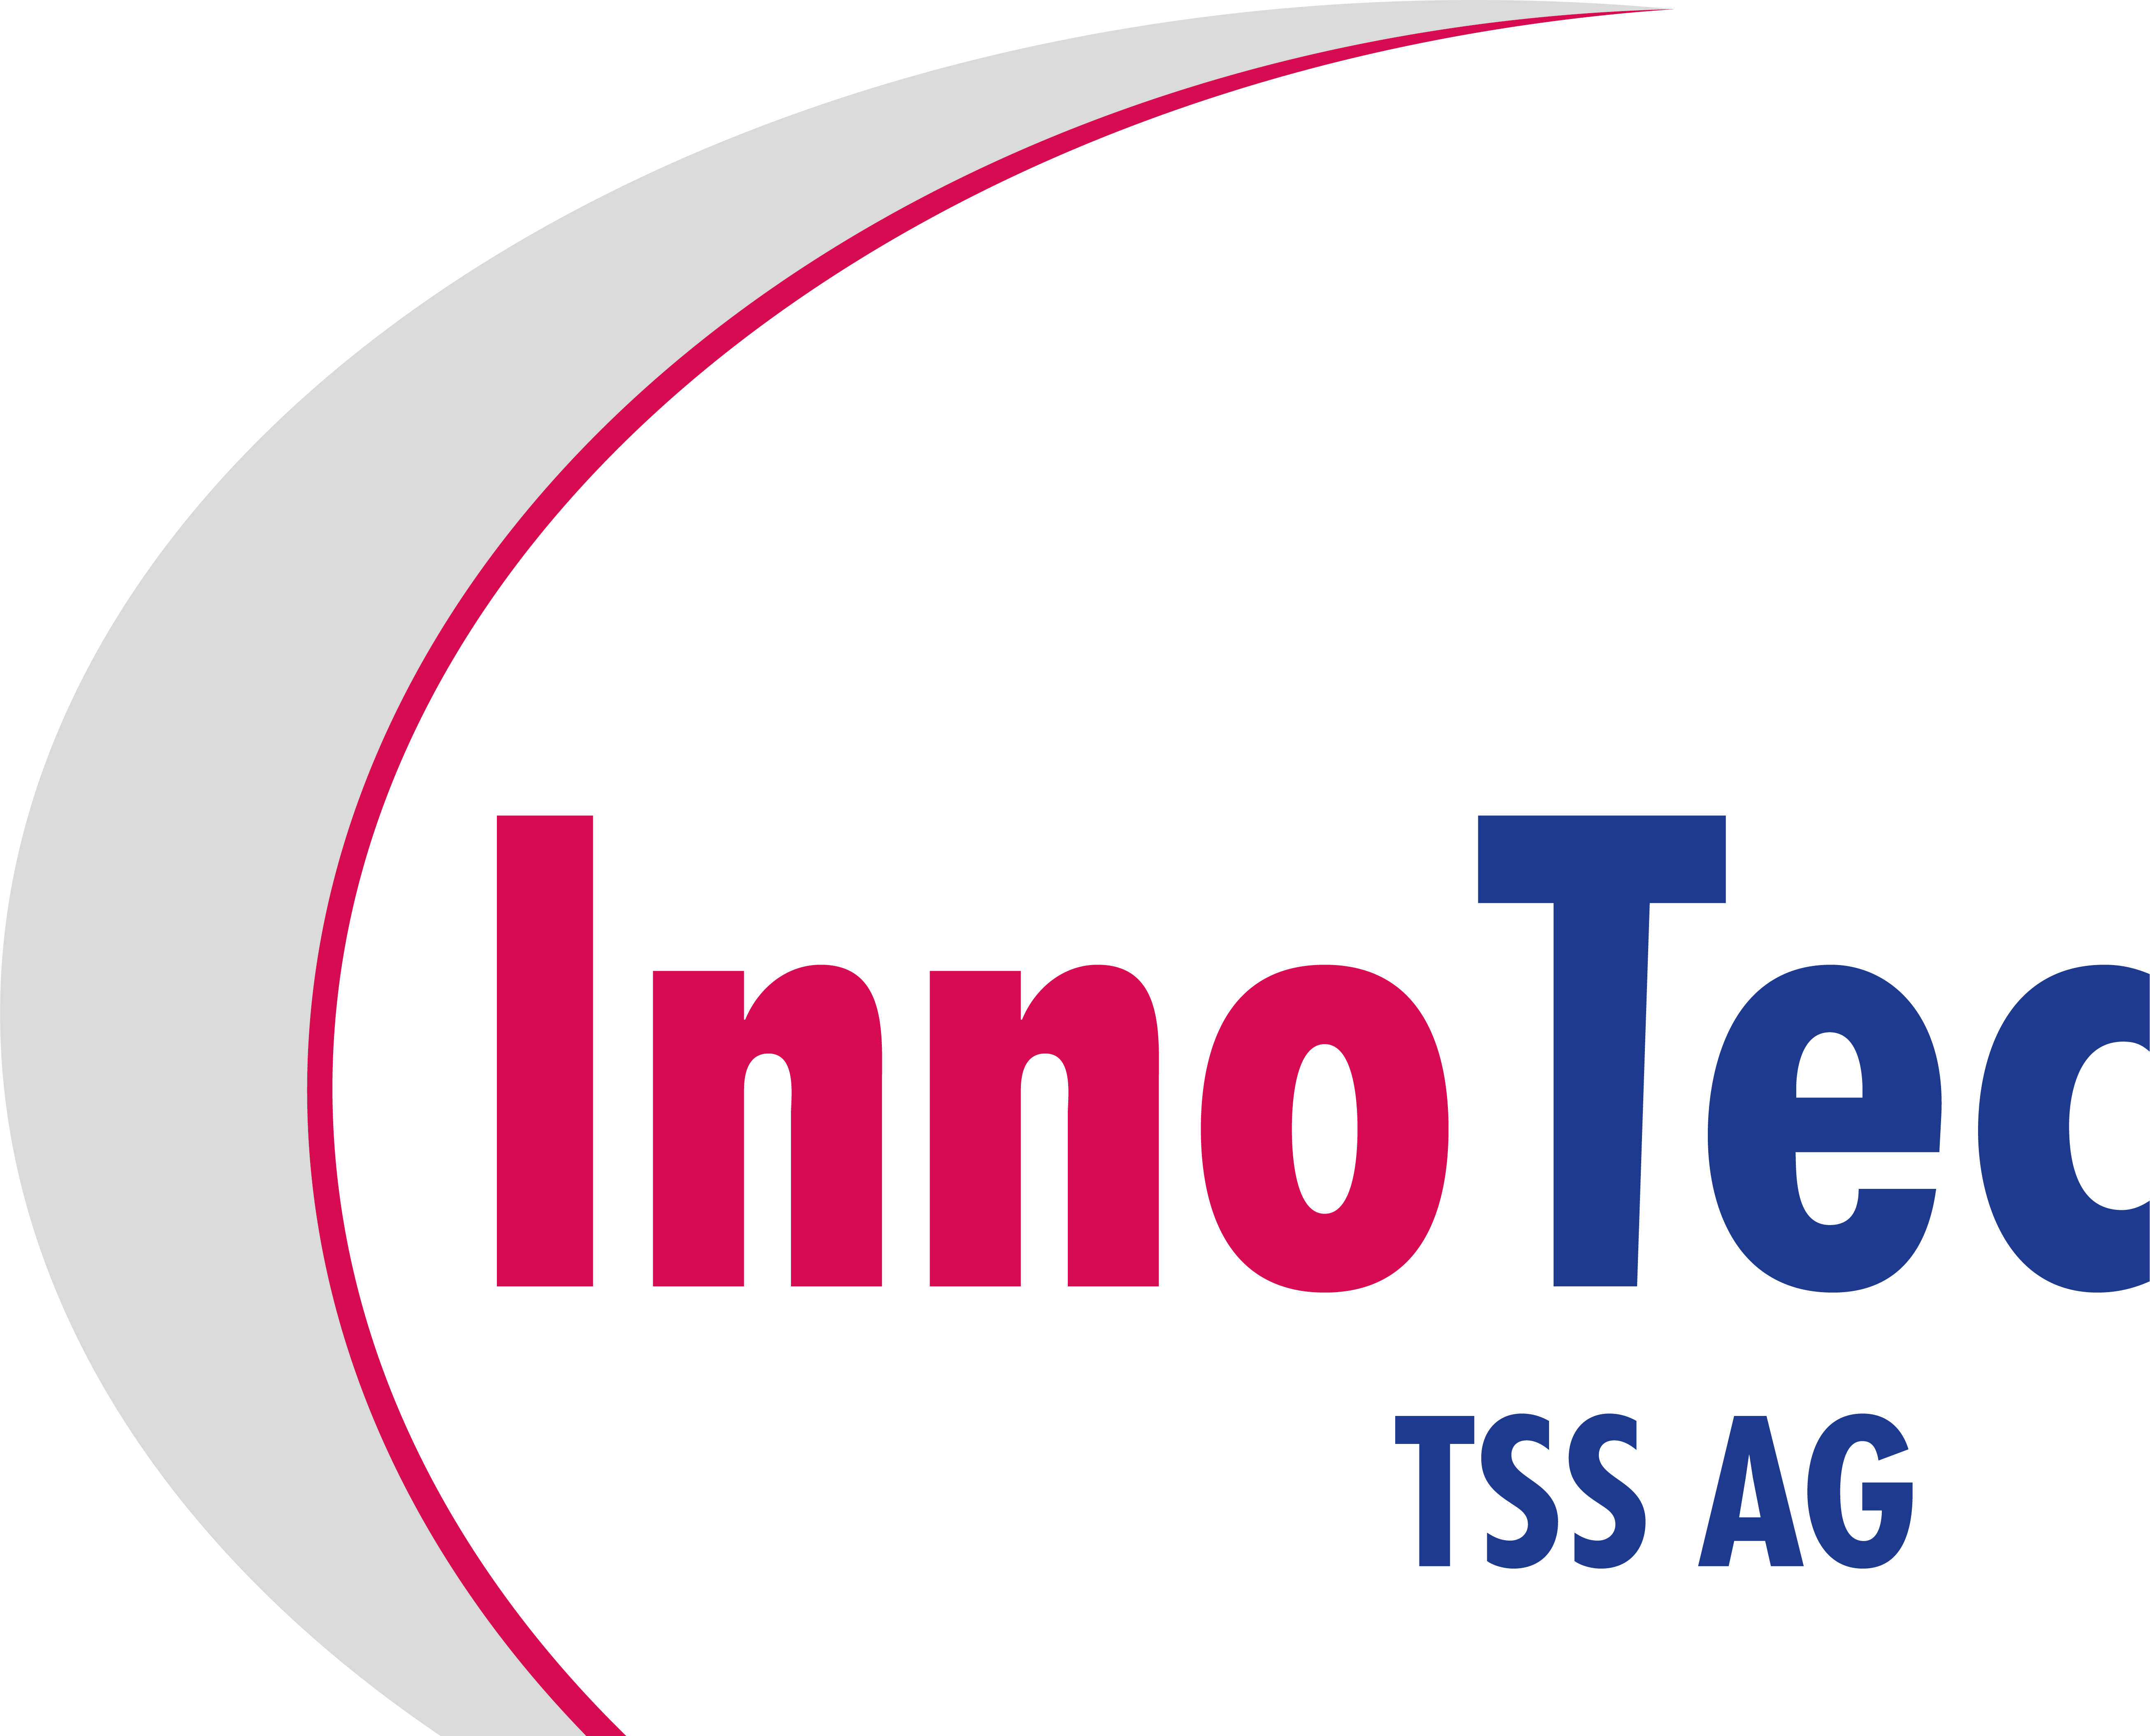 Innotec TSS AG